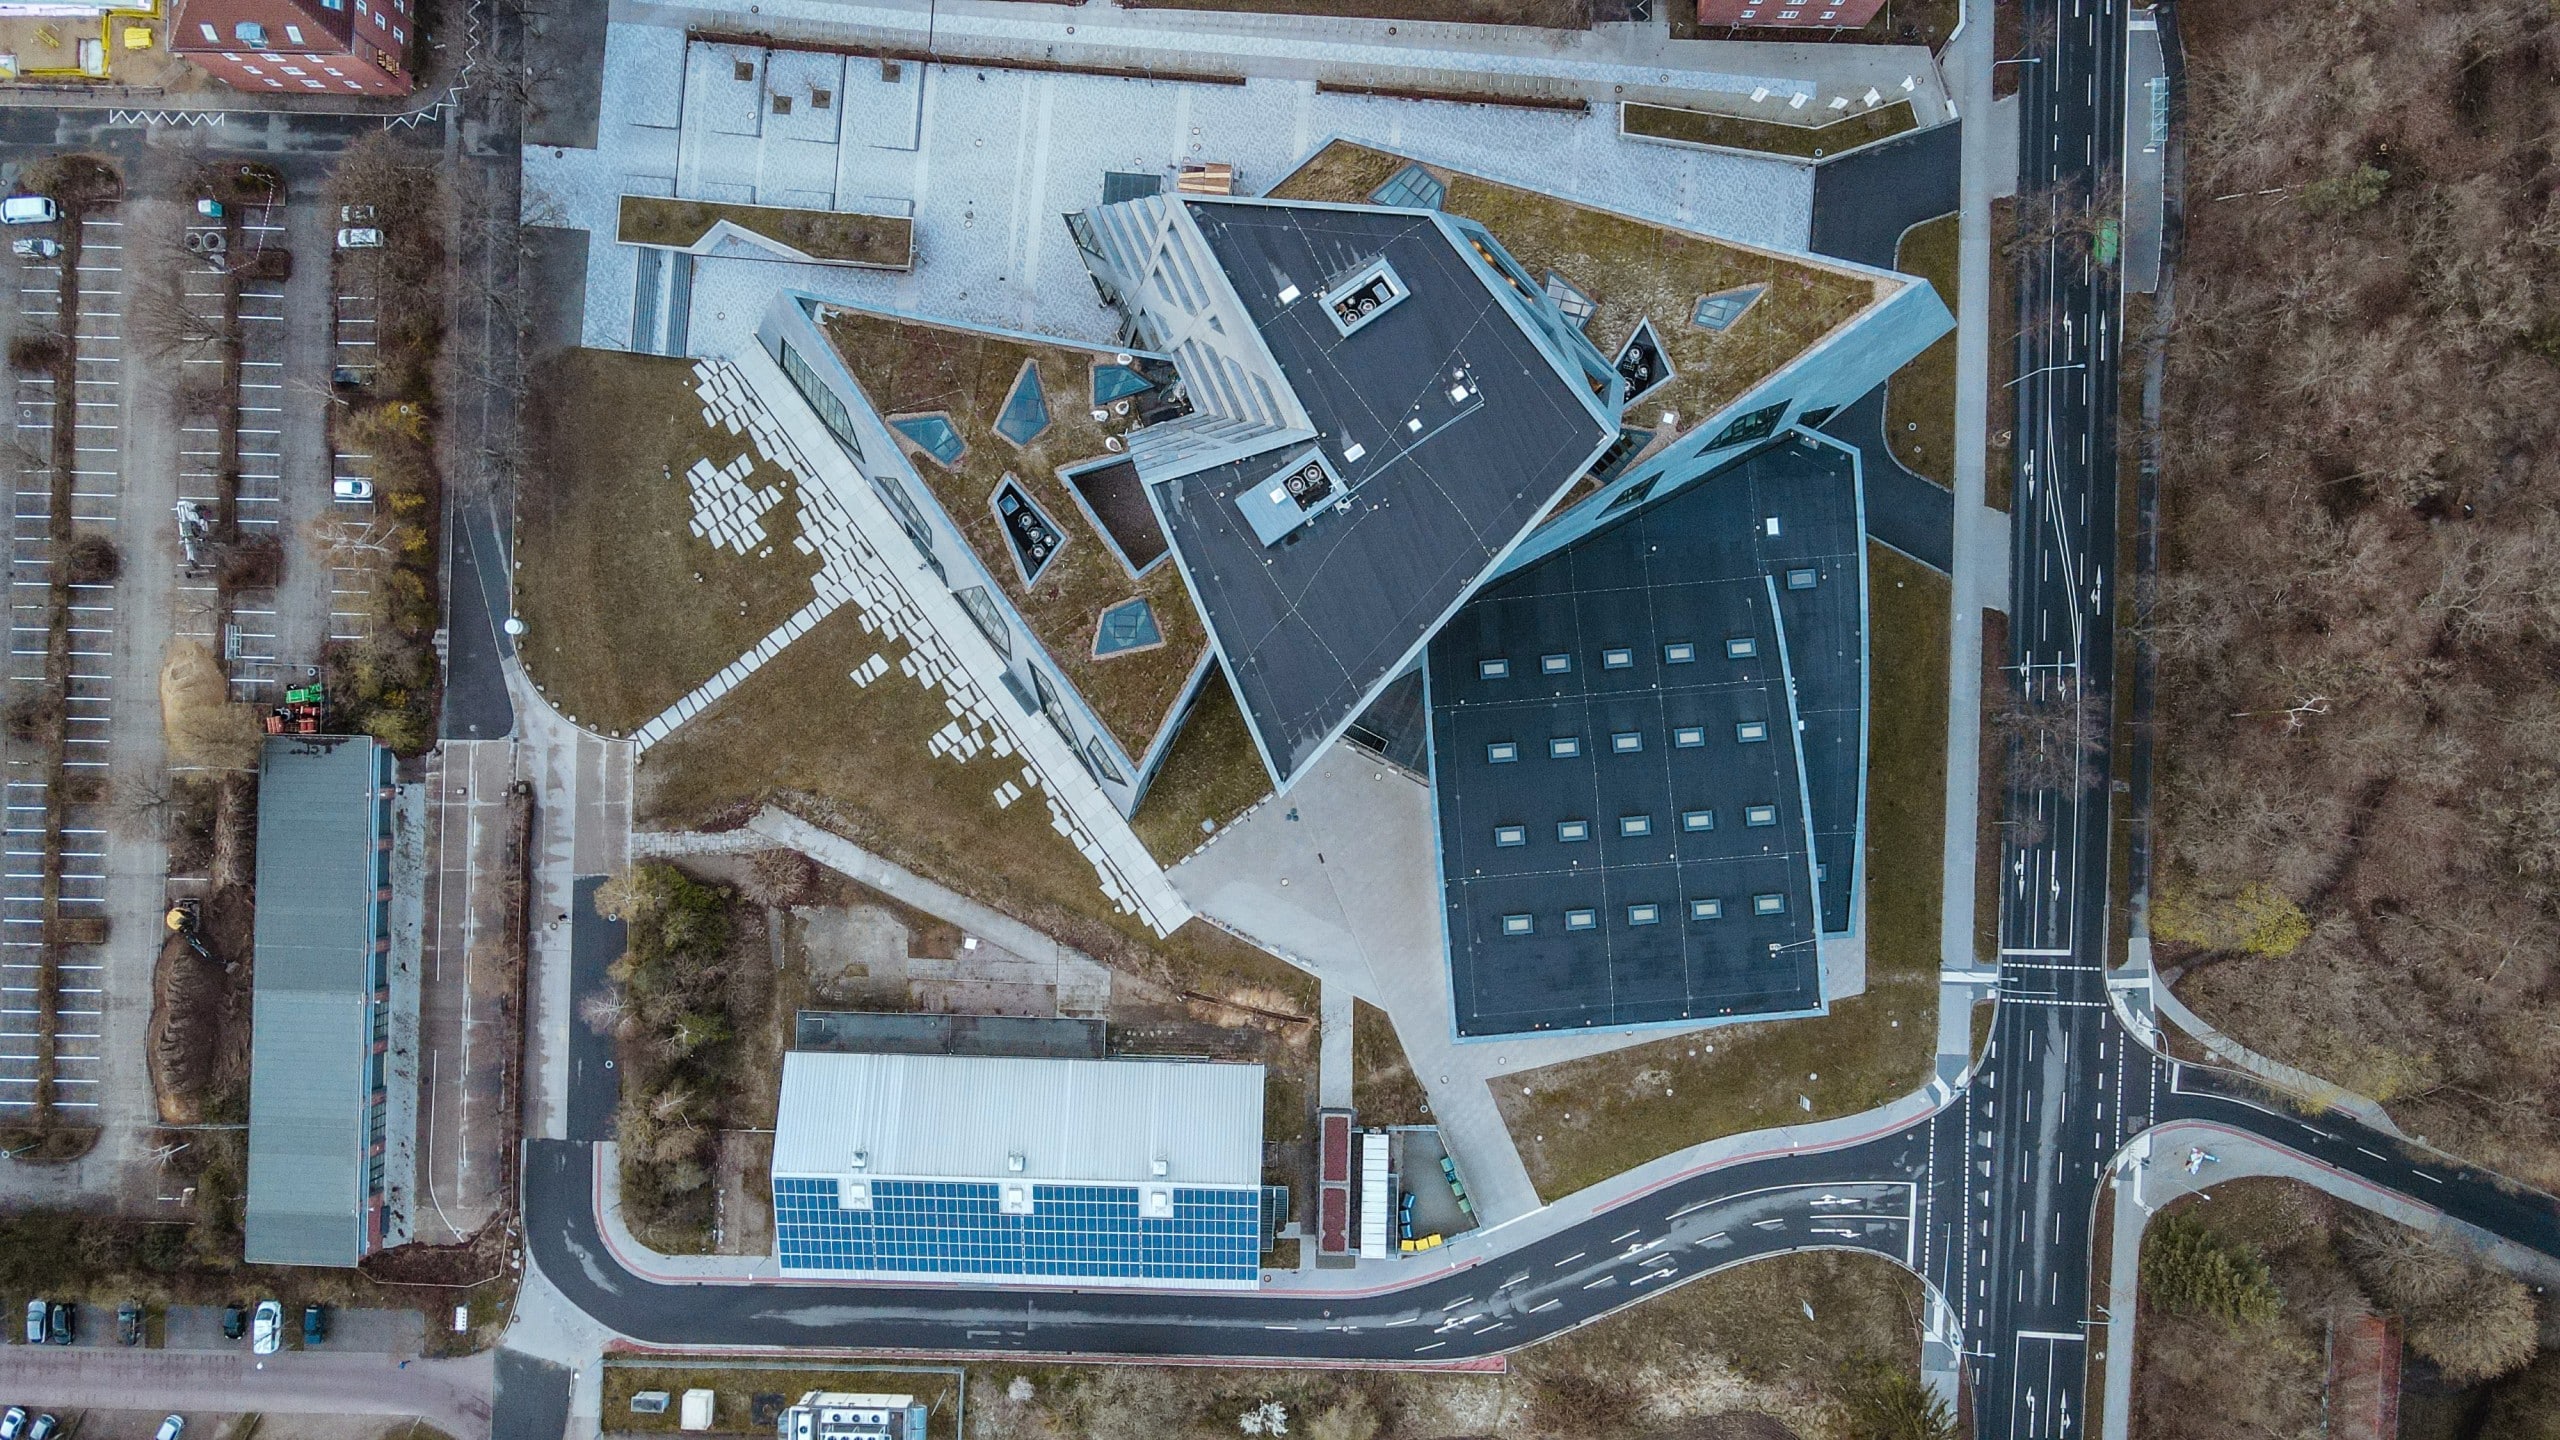 Die Leuphana-Universität in Lüneburg ist mit ihren Solarzellen und begrünten Flächen beispielhaft für den Klimaschutz. Foto: Florian Savatry via Unsplash